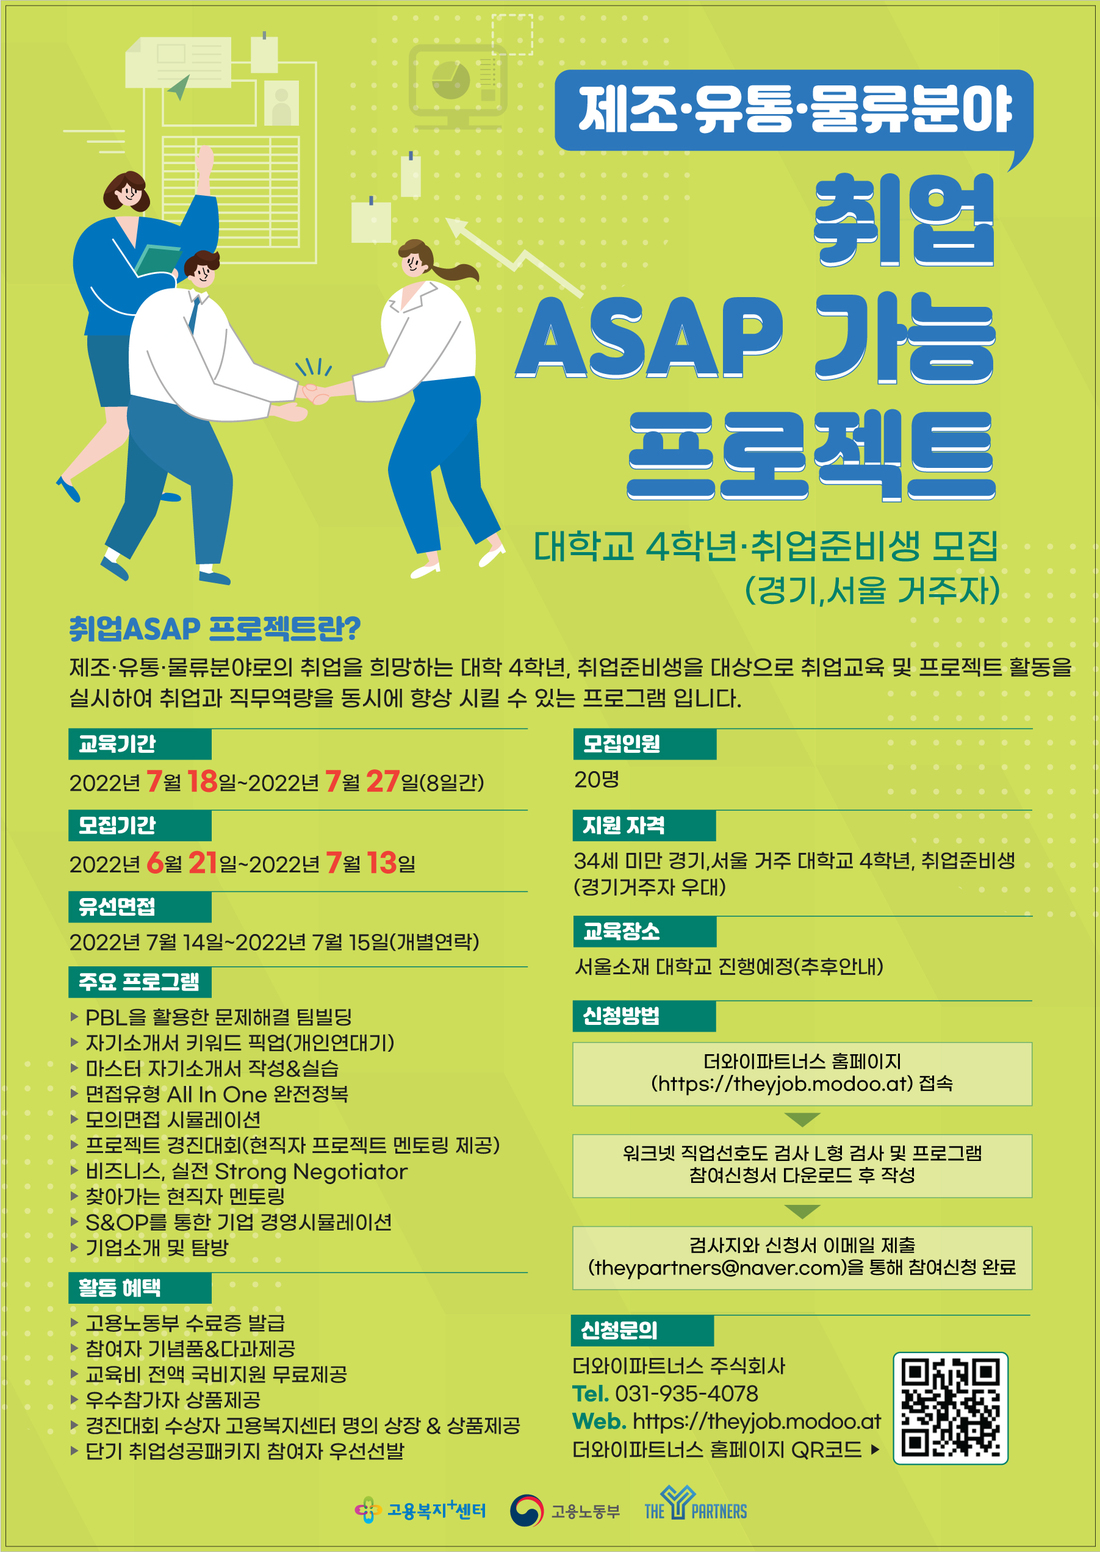 2유형_취업준비생_취업ASAP 프로젝트 포스터.jpg